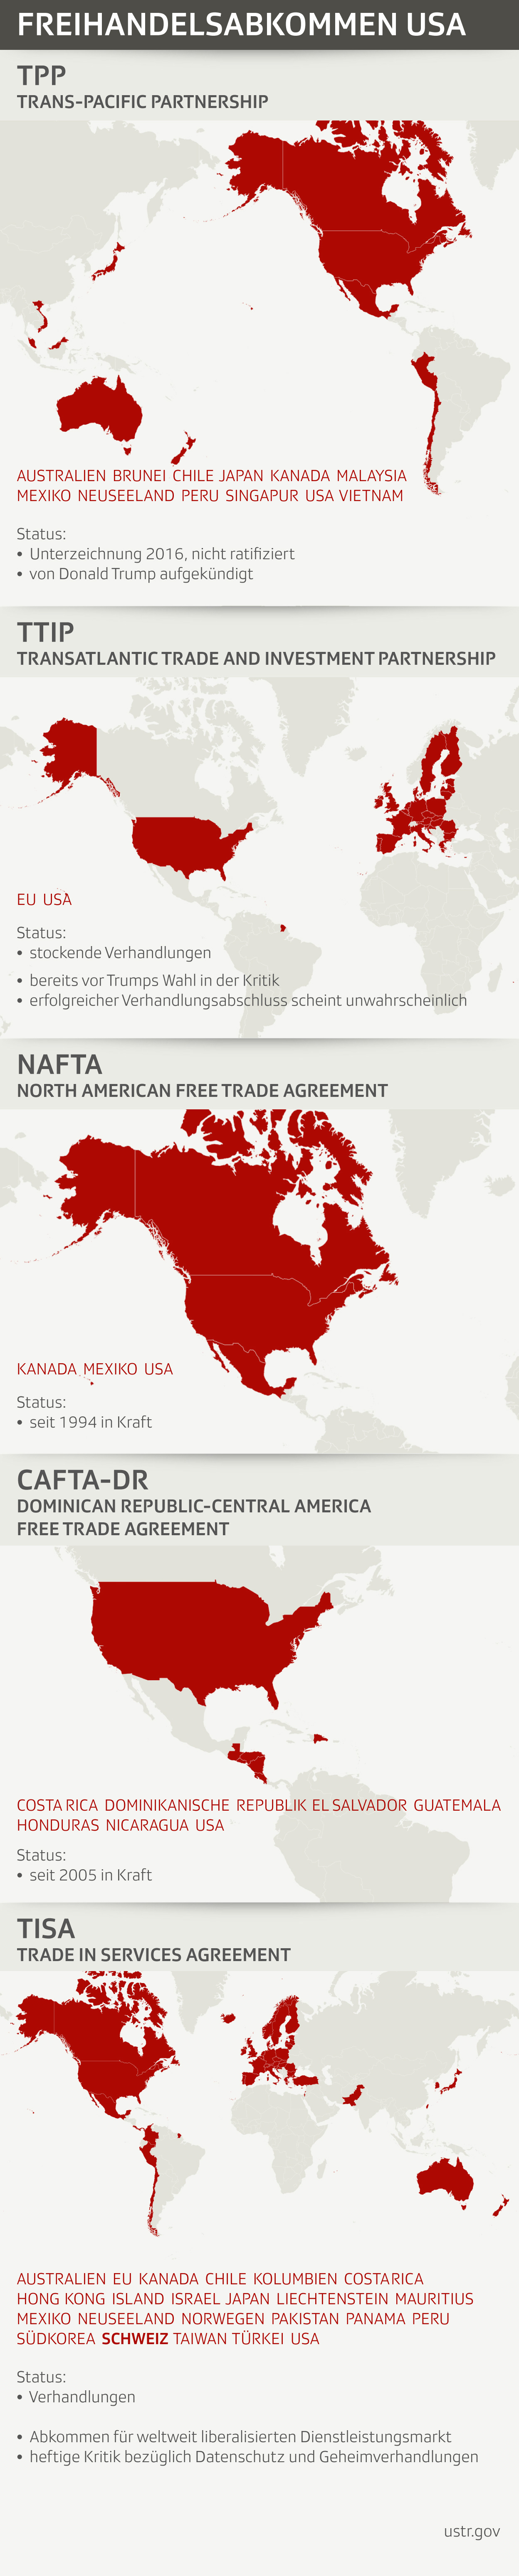 Multilaterale Freihandelsabkommen der USA